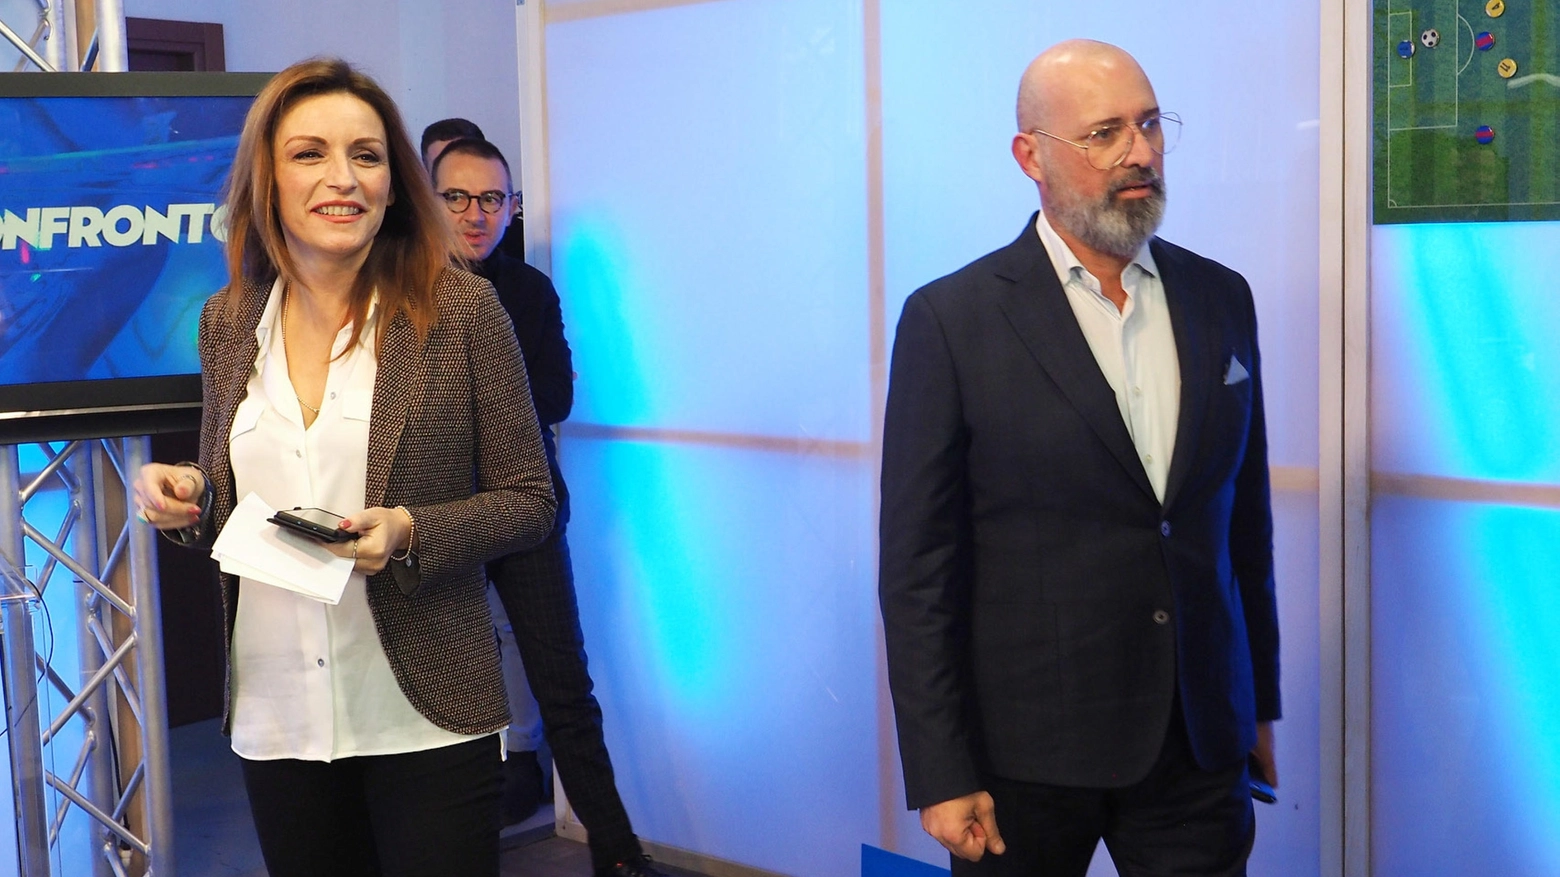 Lucia Borgonzoni e Stefano Bonaccini a E' tv per il confronto (Ansa)